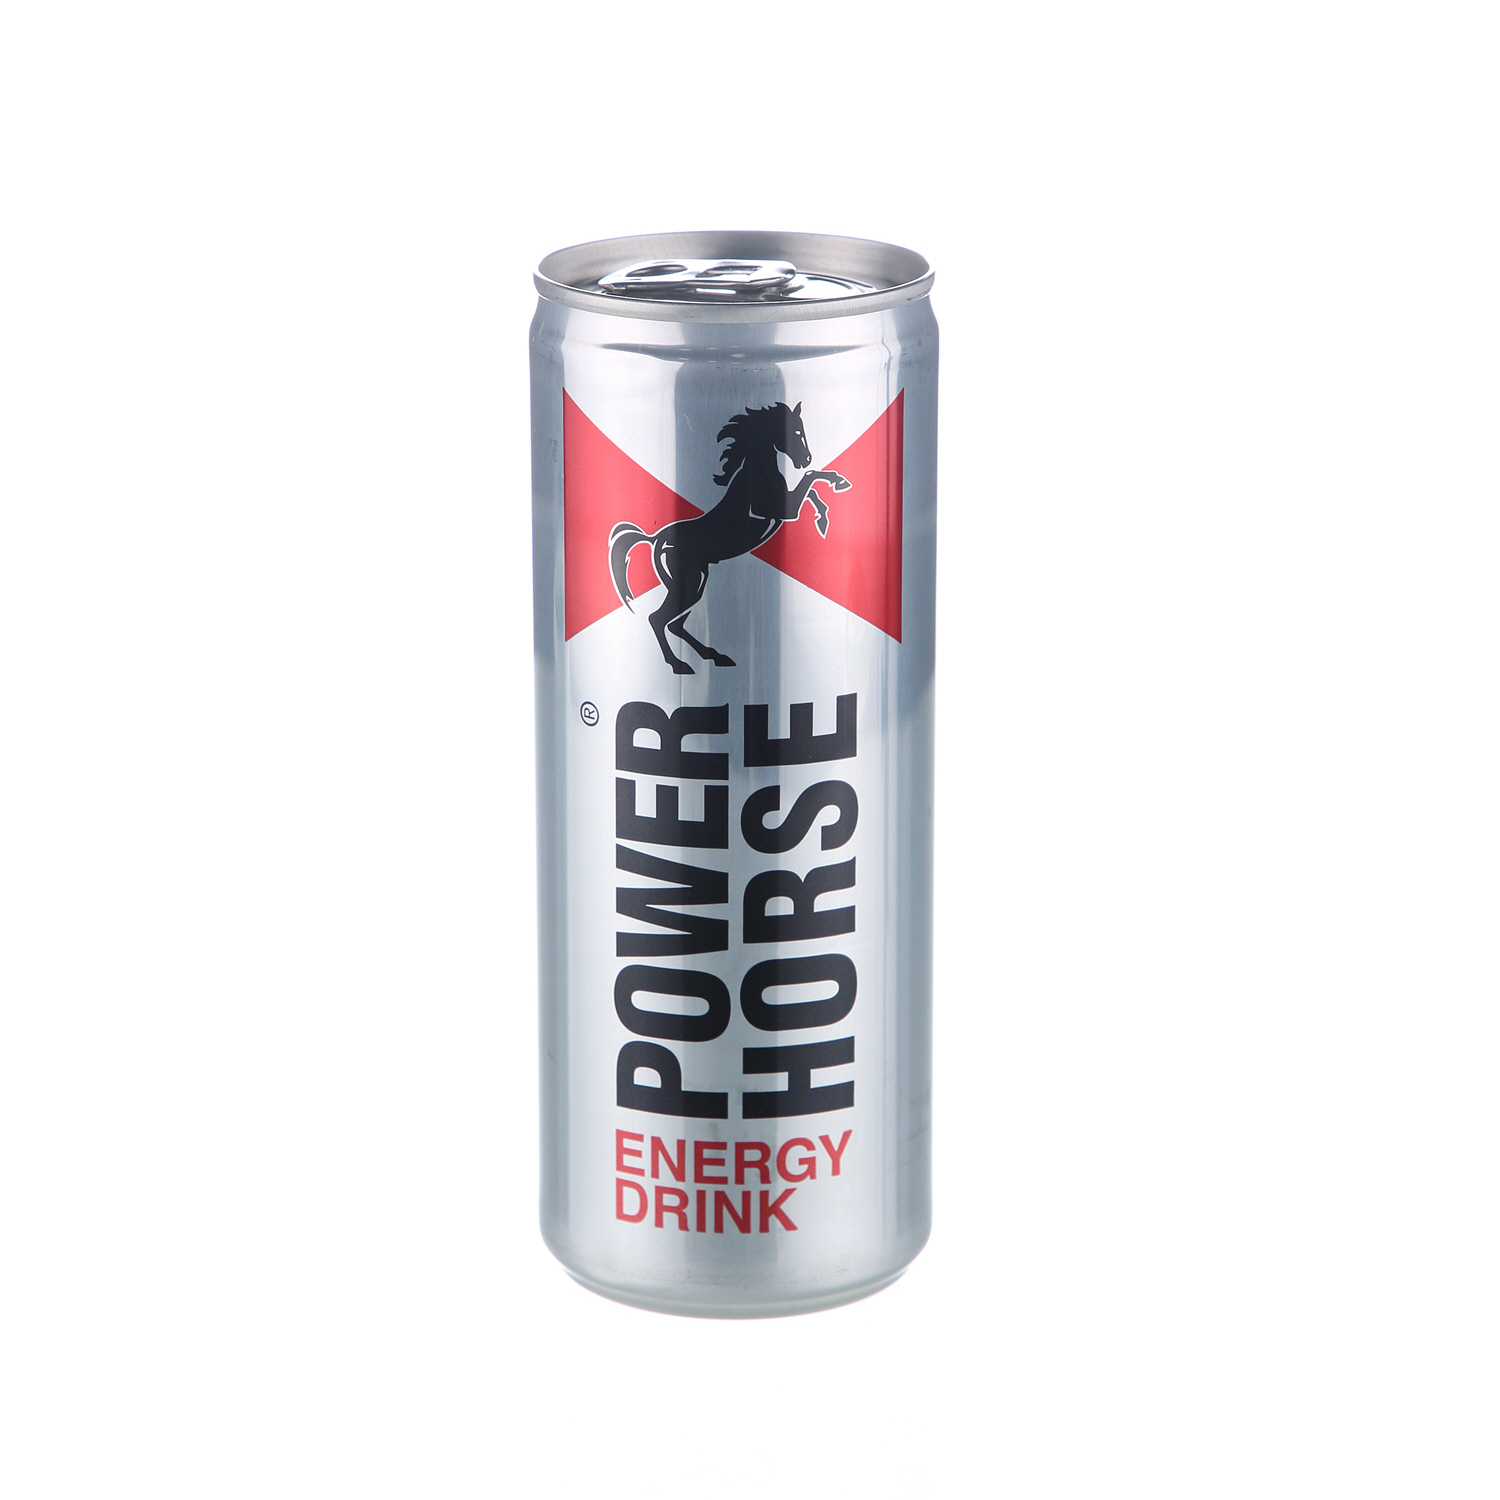 Power Horse Energy Drink 250ml